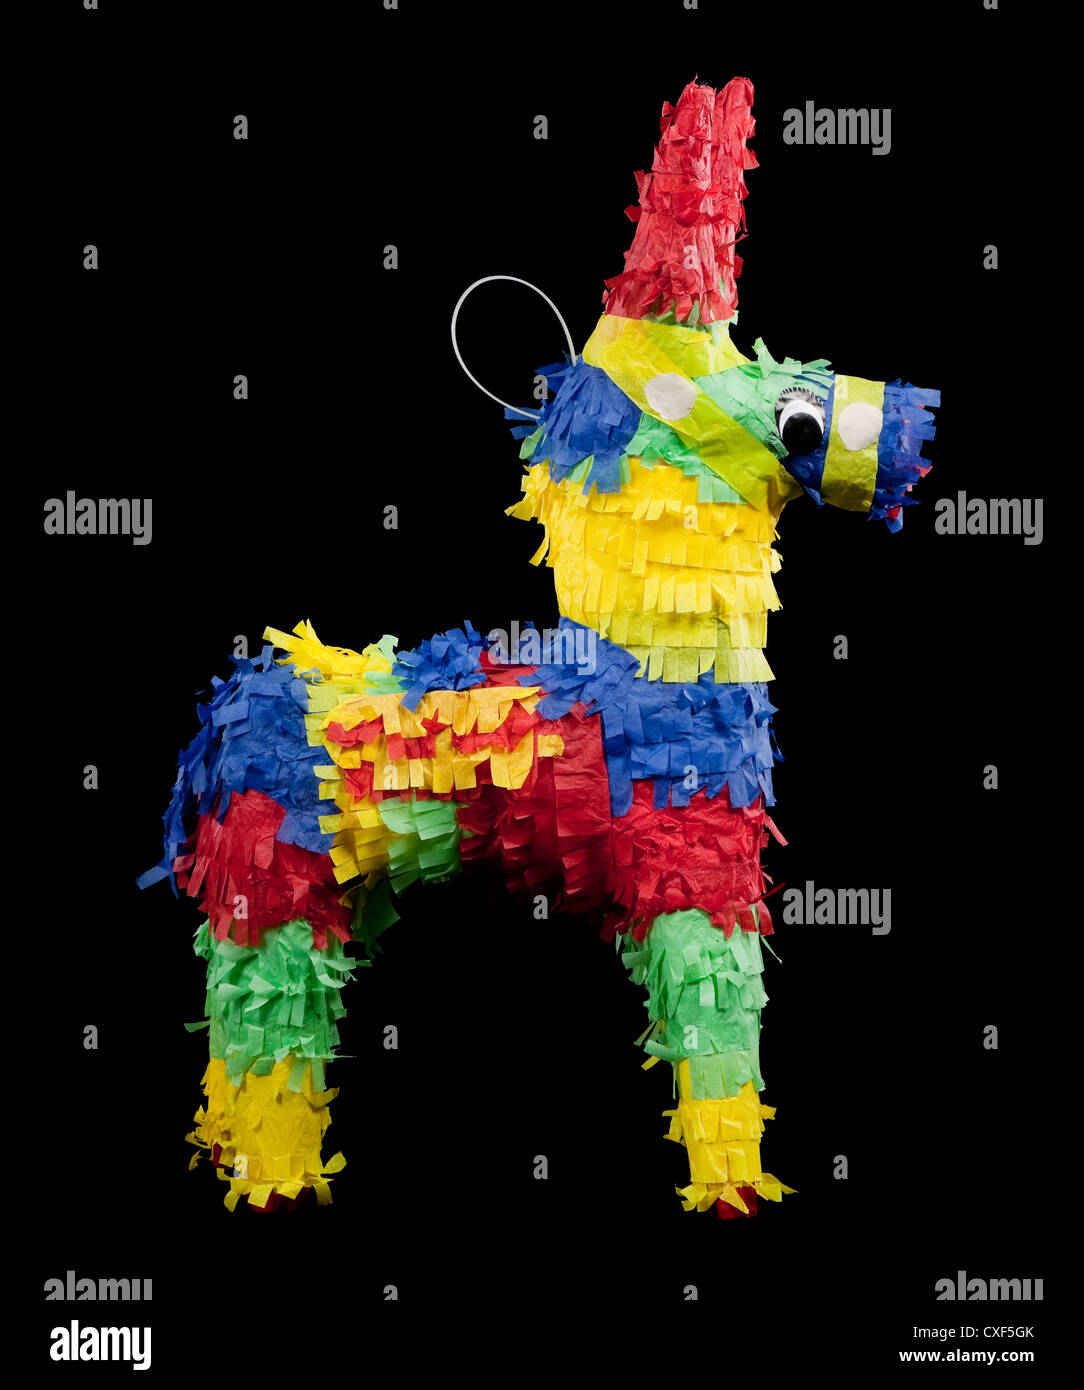 Piñata burro de couleurs vives sur fond noir Banque D'Images